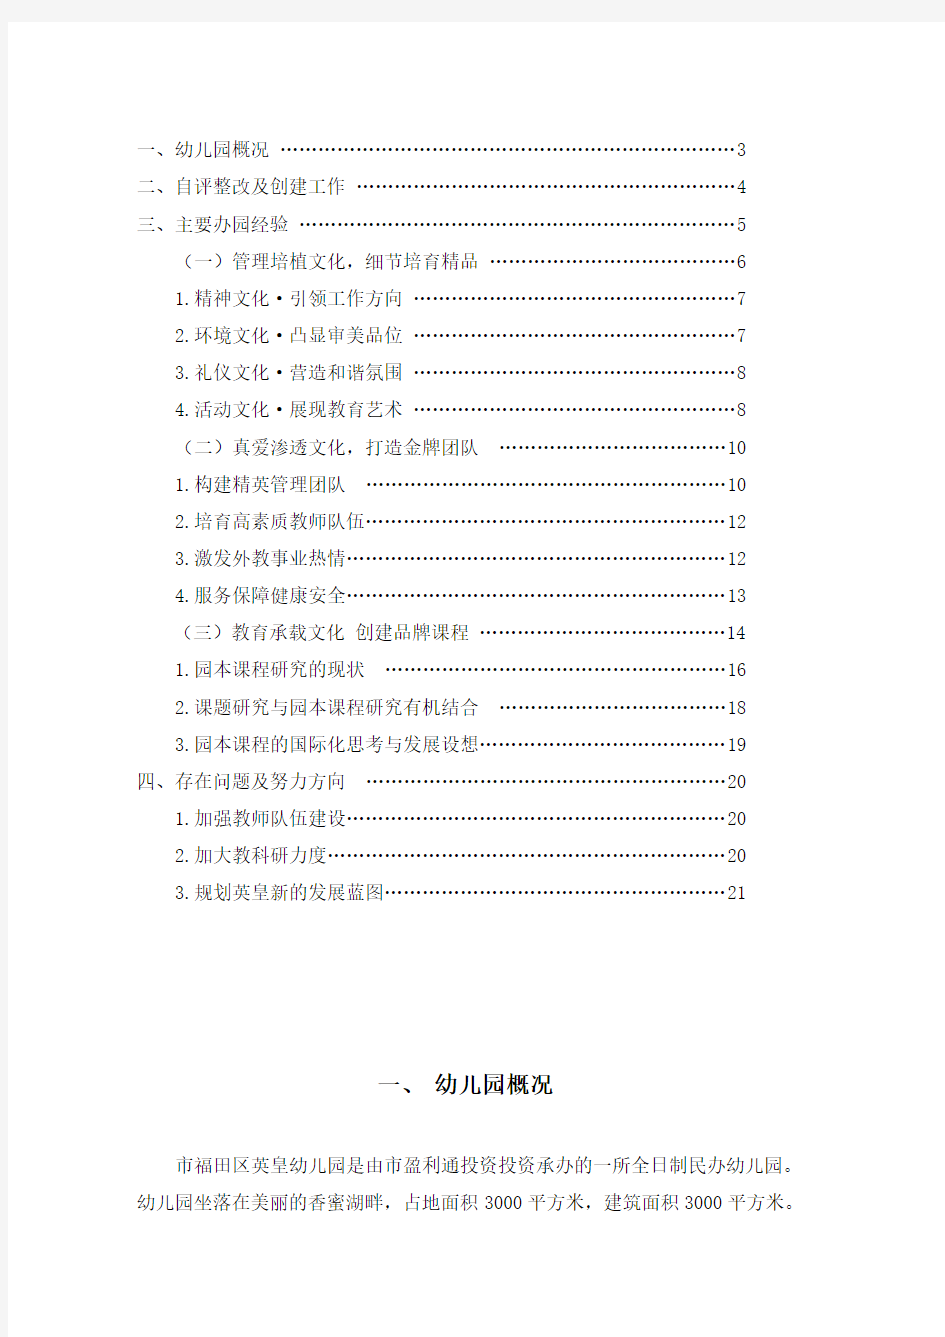 广东省一级幼儿园评估自评报告书